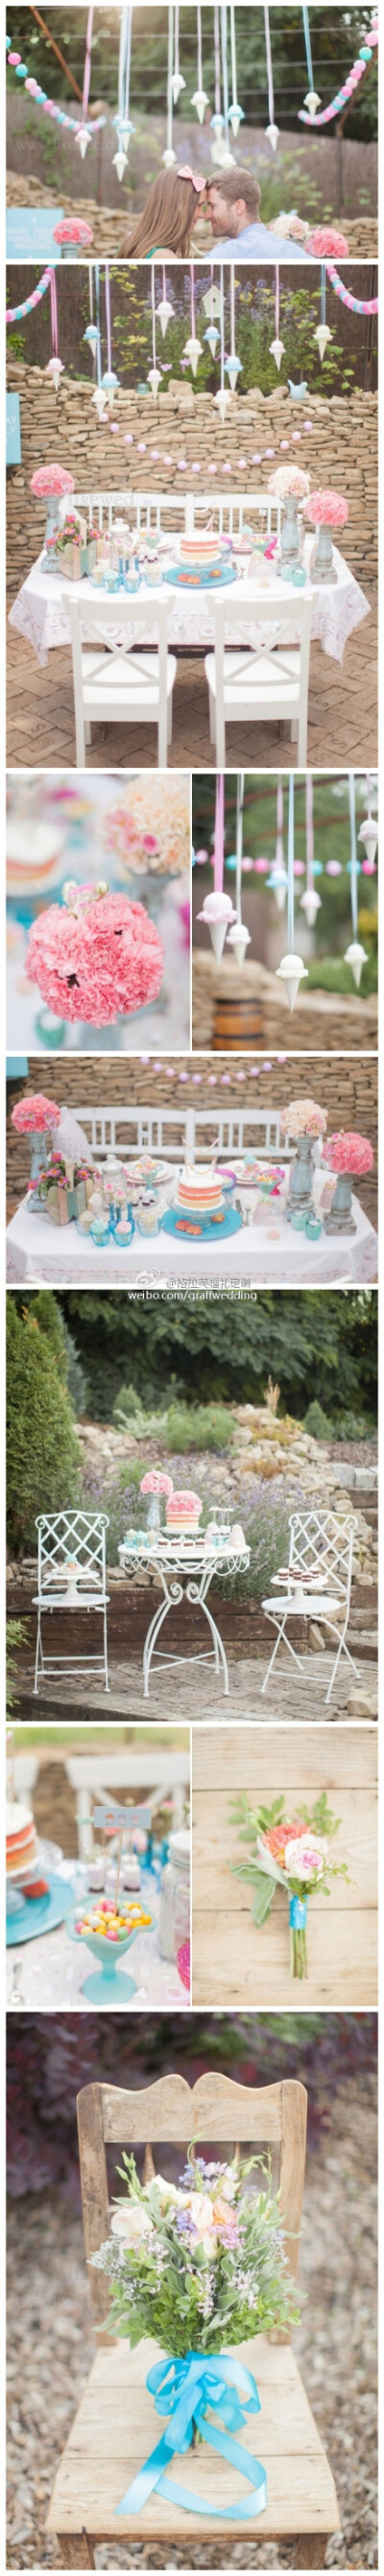 #格拉芙婚礼素材欣赏# 粉蓝色的订婚照甜品桌